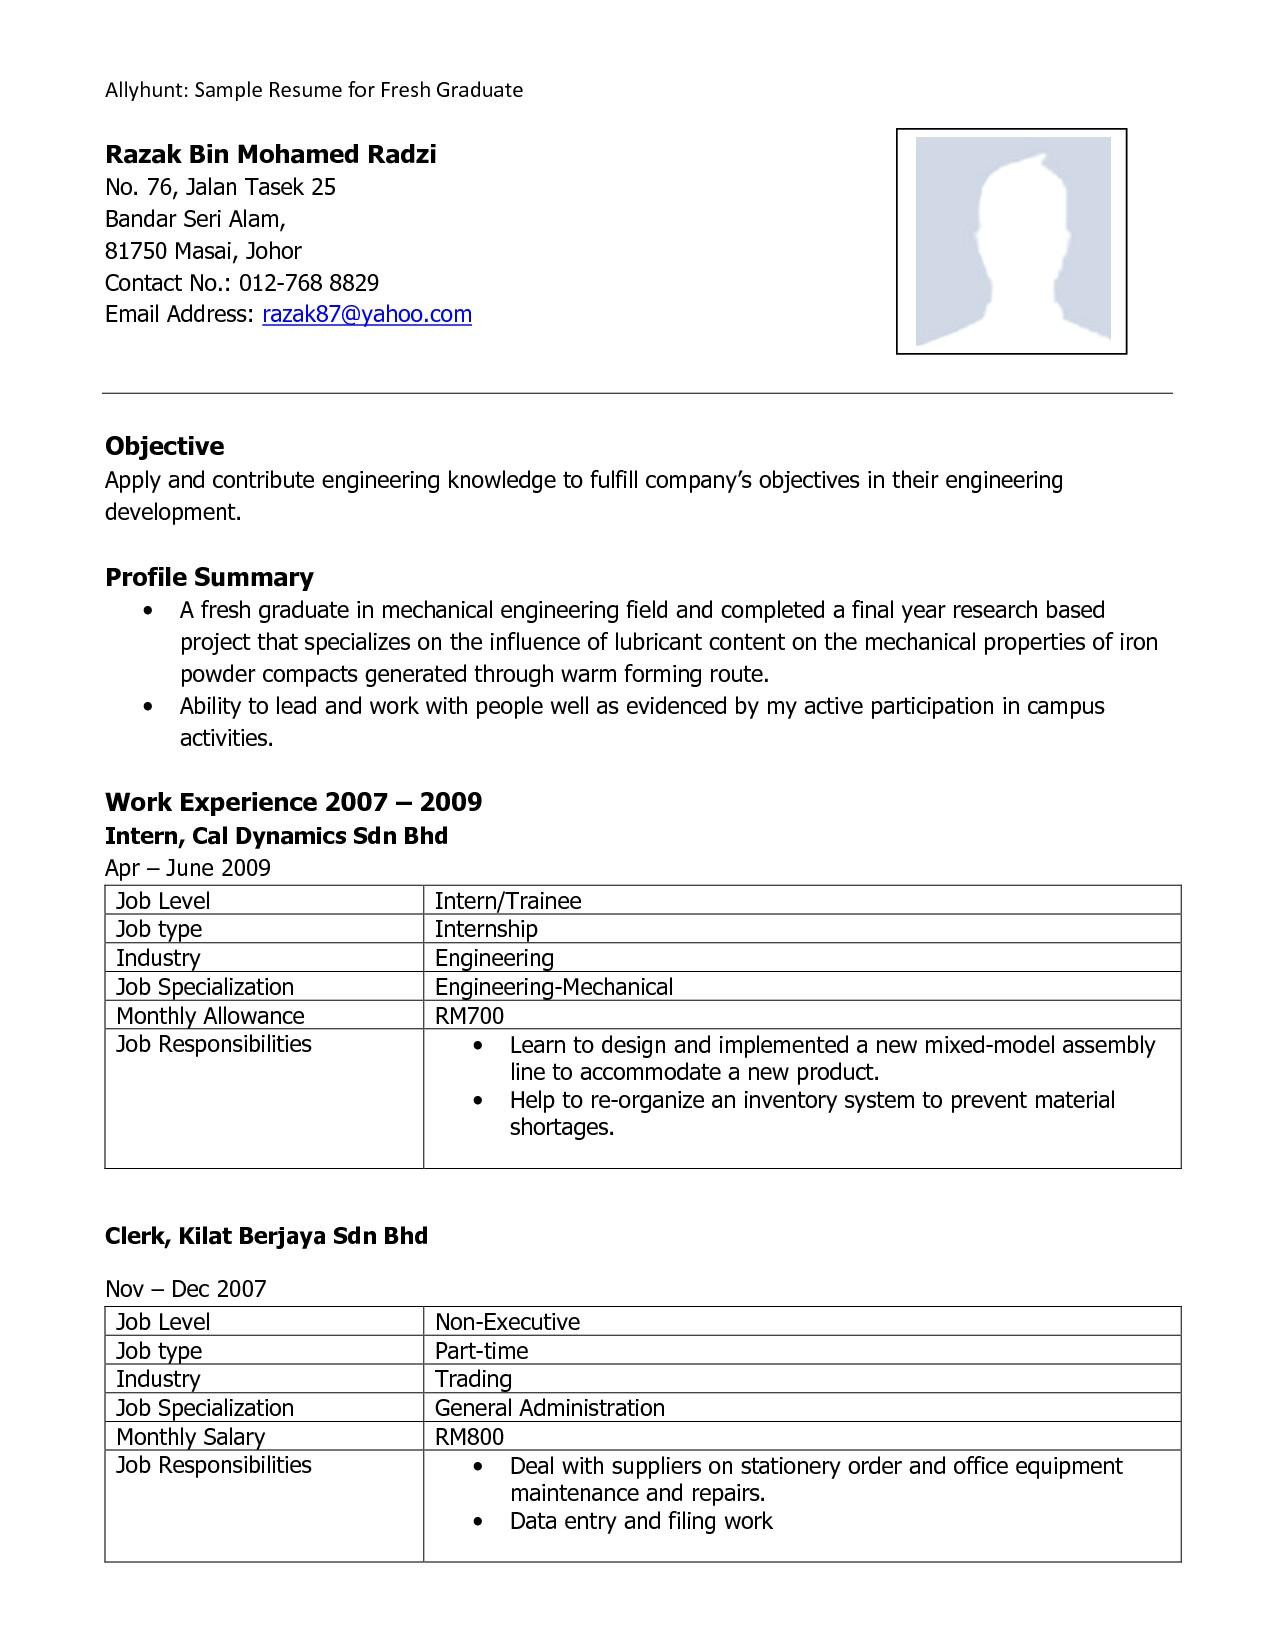 Sample Resume for Fresh Graduate Engineering Industrial Engineer Cv Doc October 2021